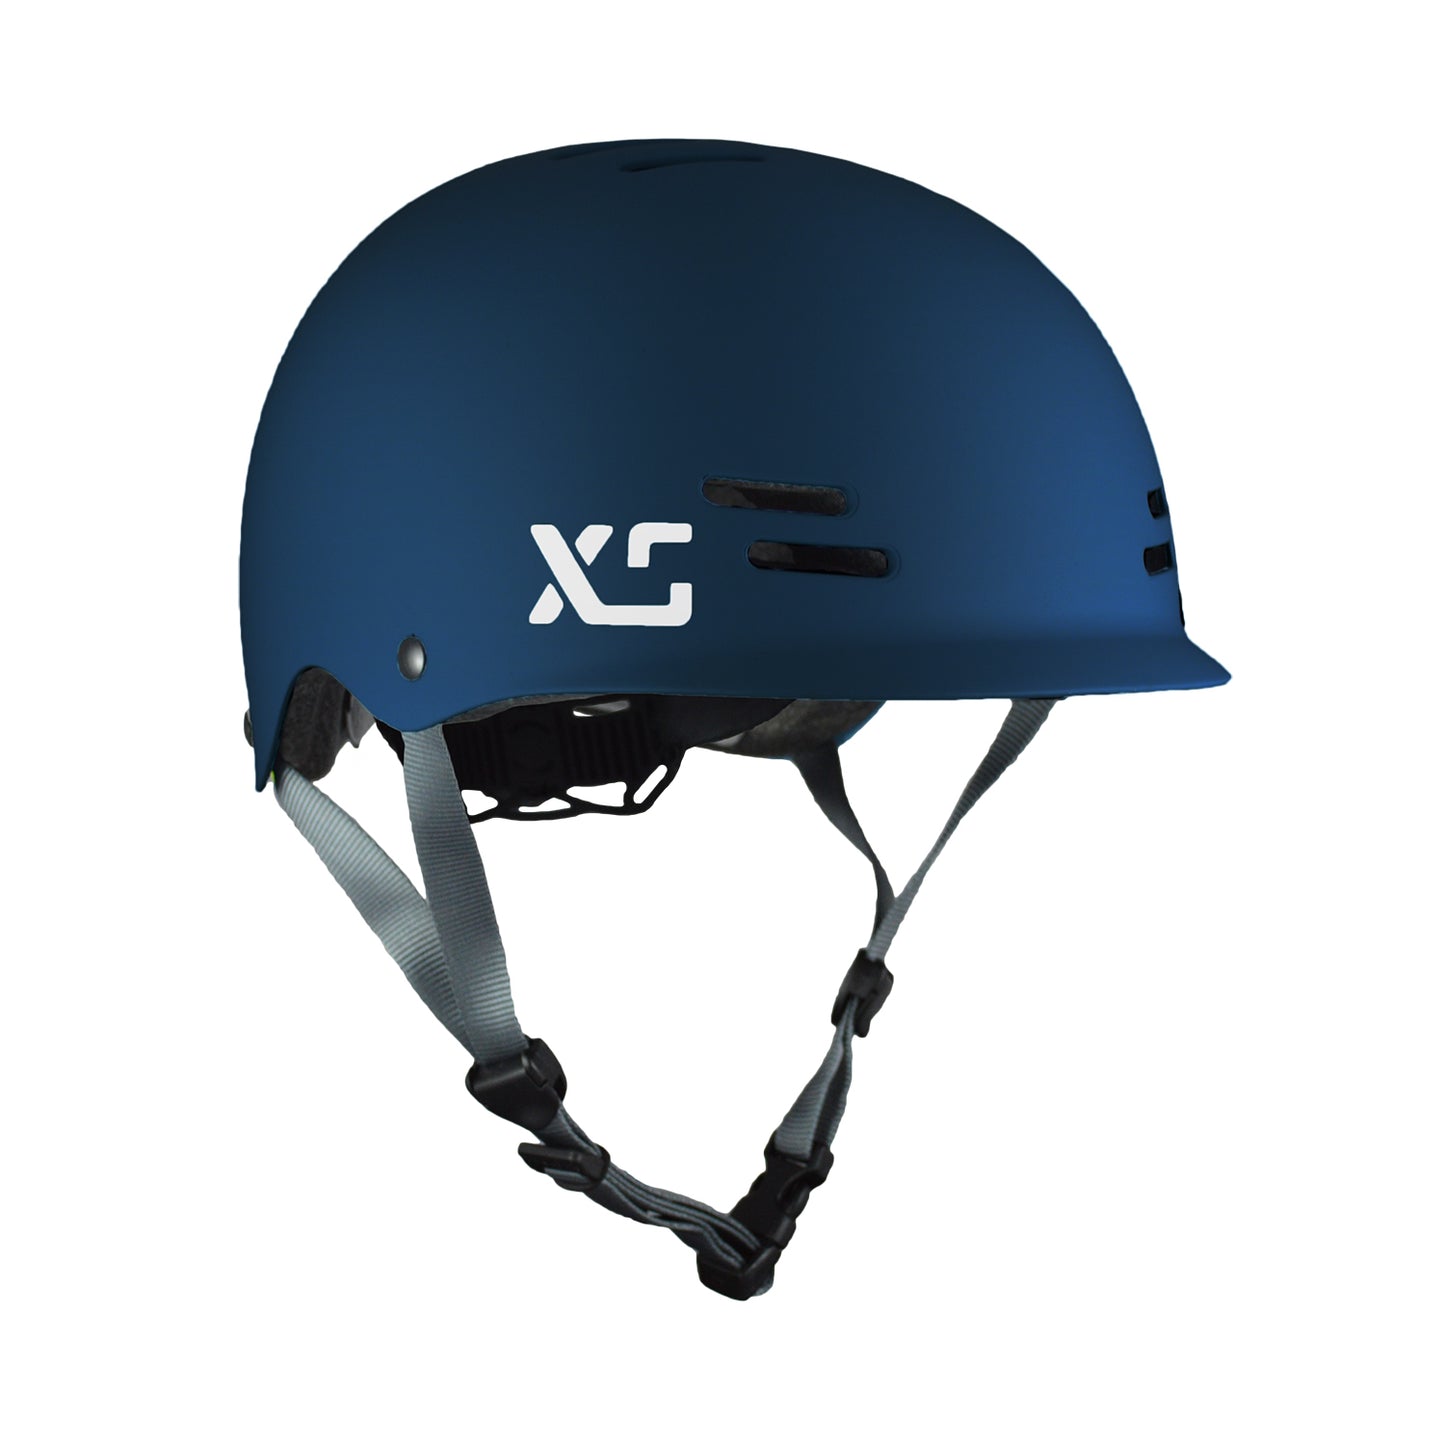 XS Helmet - Unified Bike/Scooter Helmet